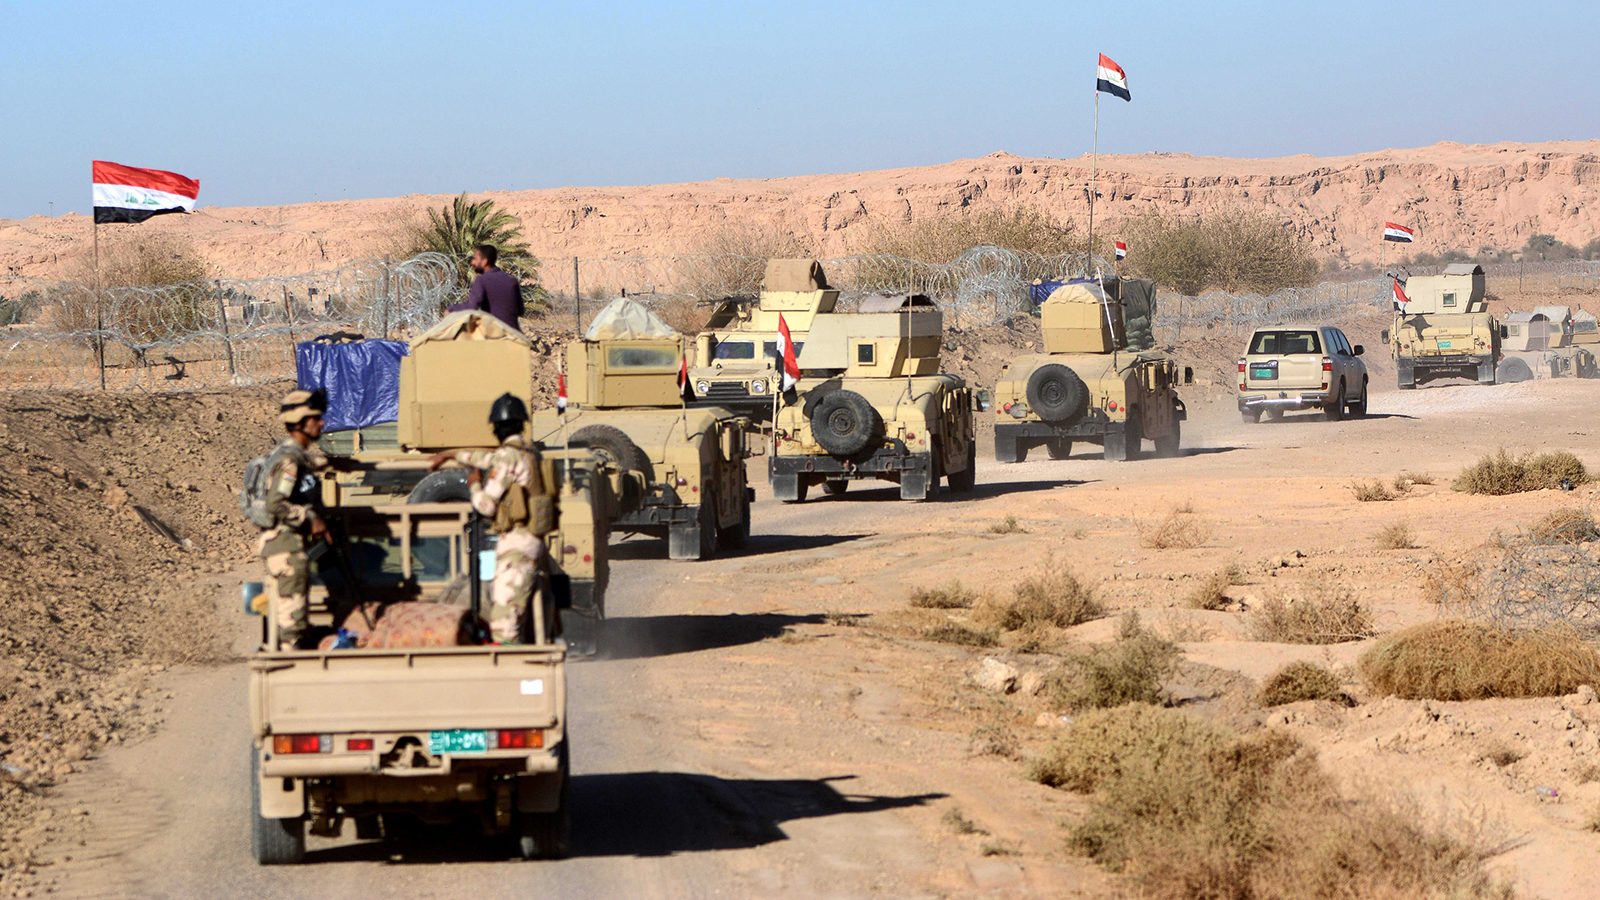 الجيش العراقي شهد عقودا من التأرجح بين القوة والضعف على مدار تاريخه(الأوروبية)